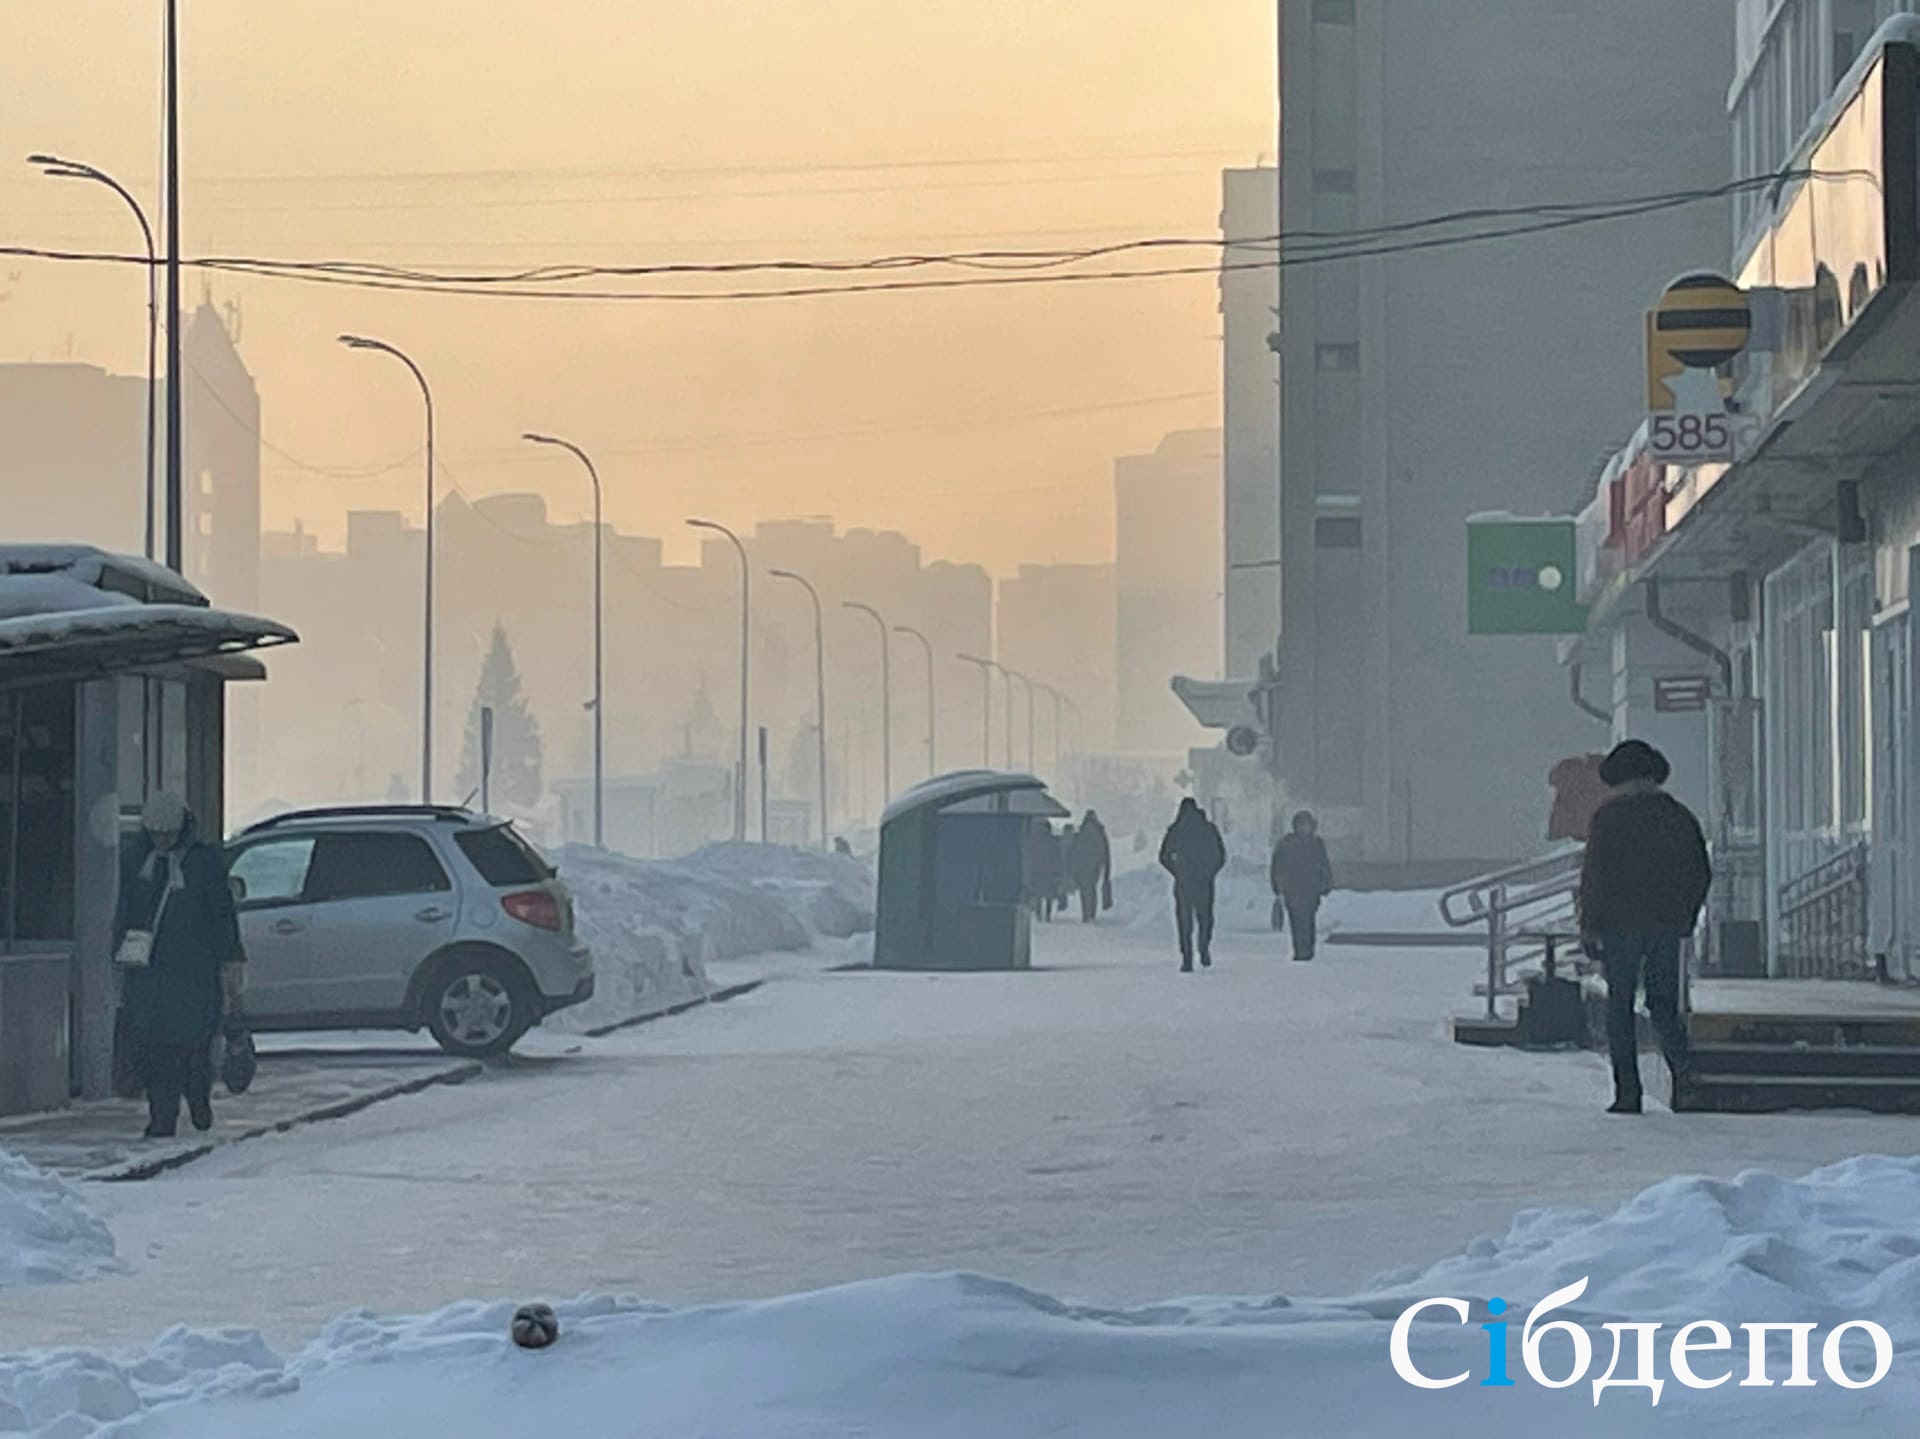 «Опять частники виноваты?»: плотная зловонная дымка окутала один из районов Кемерова